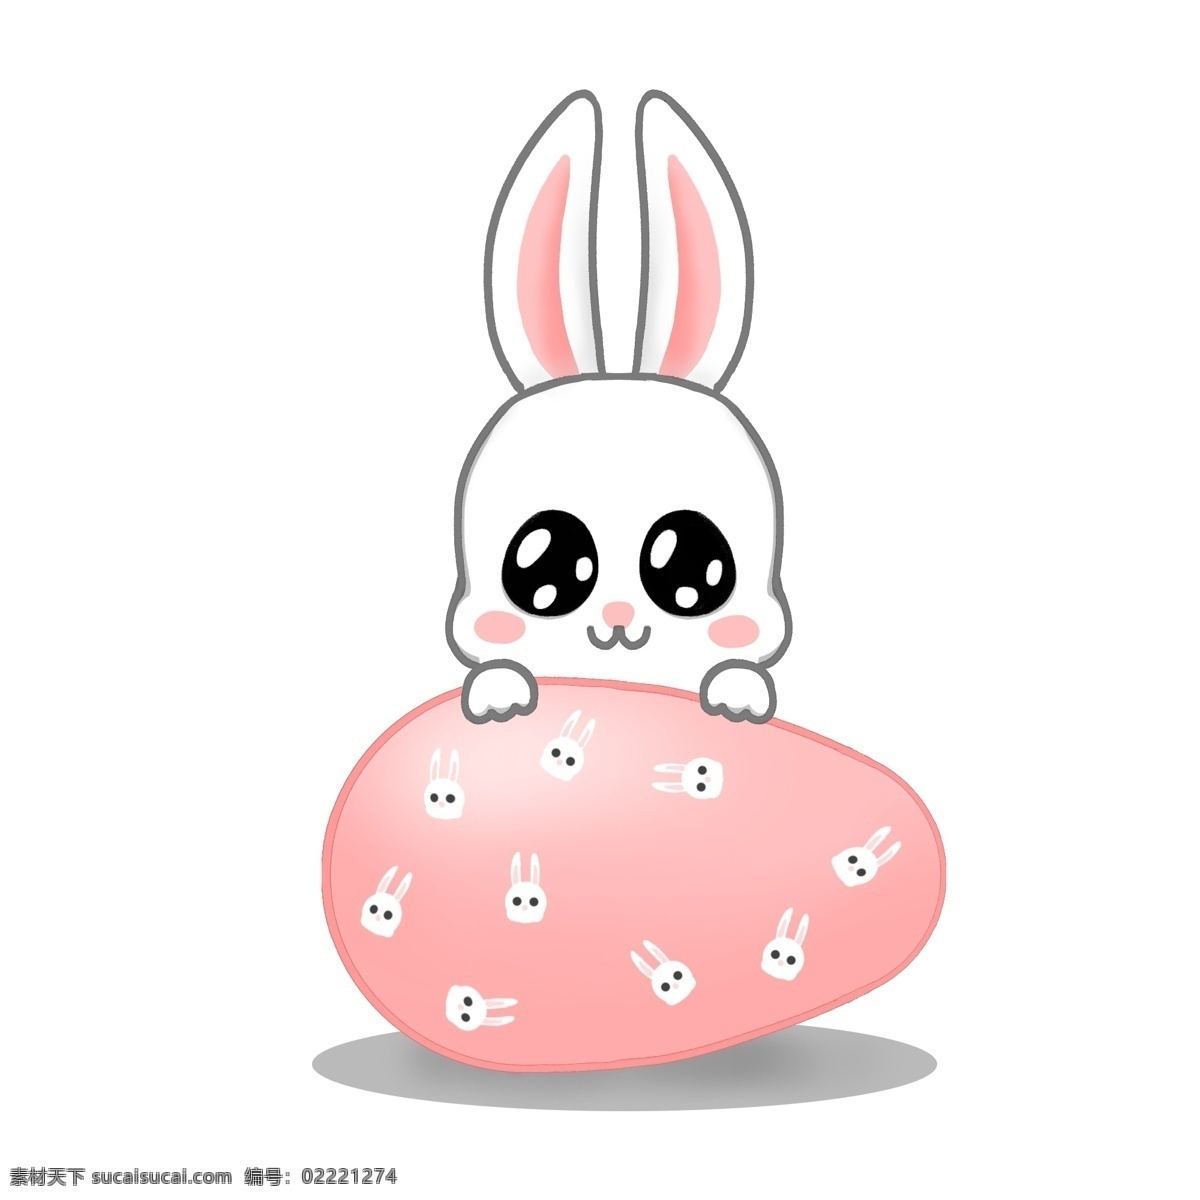 复活节 可爱 卡通 兔子 元素 卡通兔子 可爱兔子 彩蛋